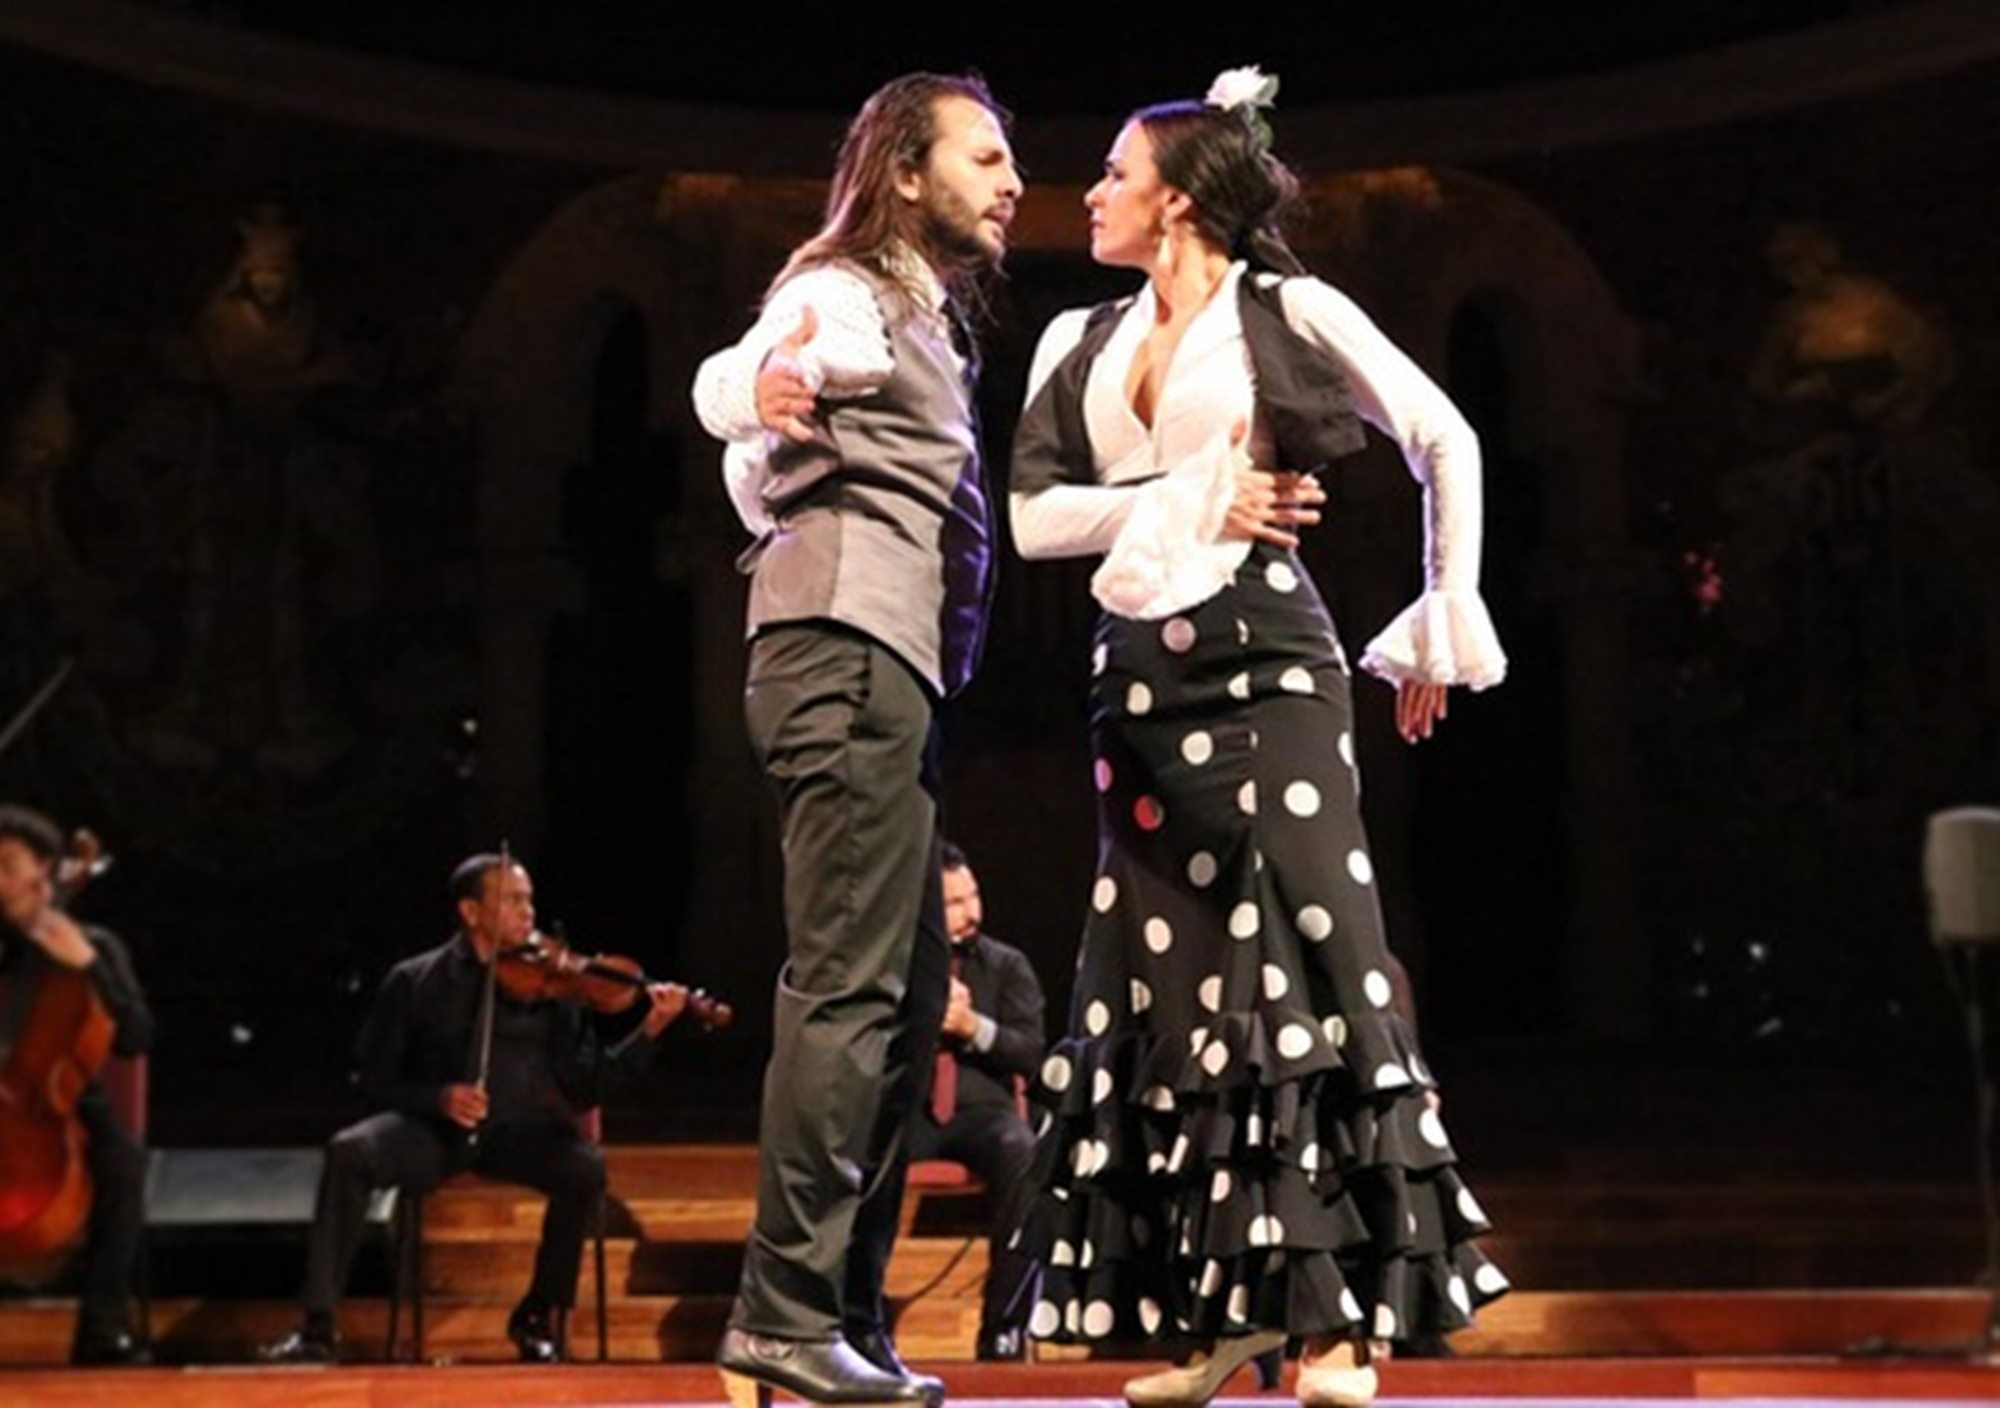 show Espectáculo Ópera y Flamenco en el Palau de la Música Catalana de barcelona